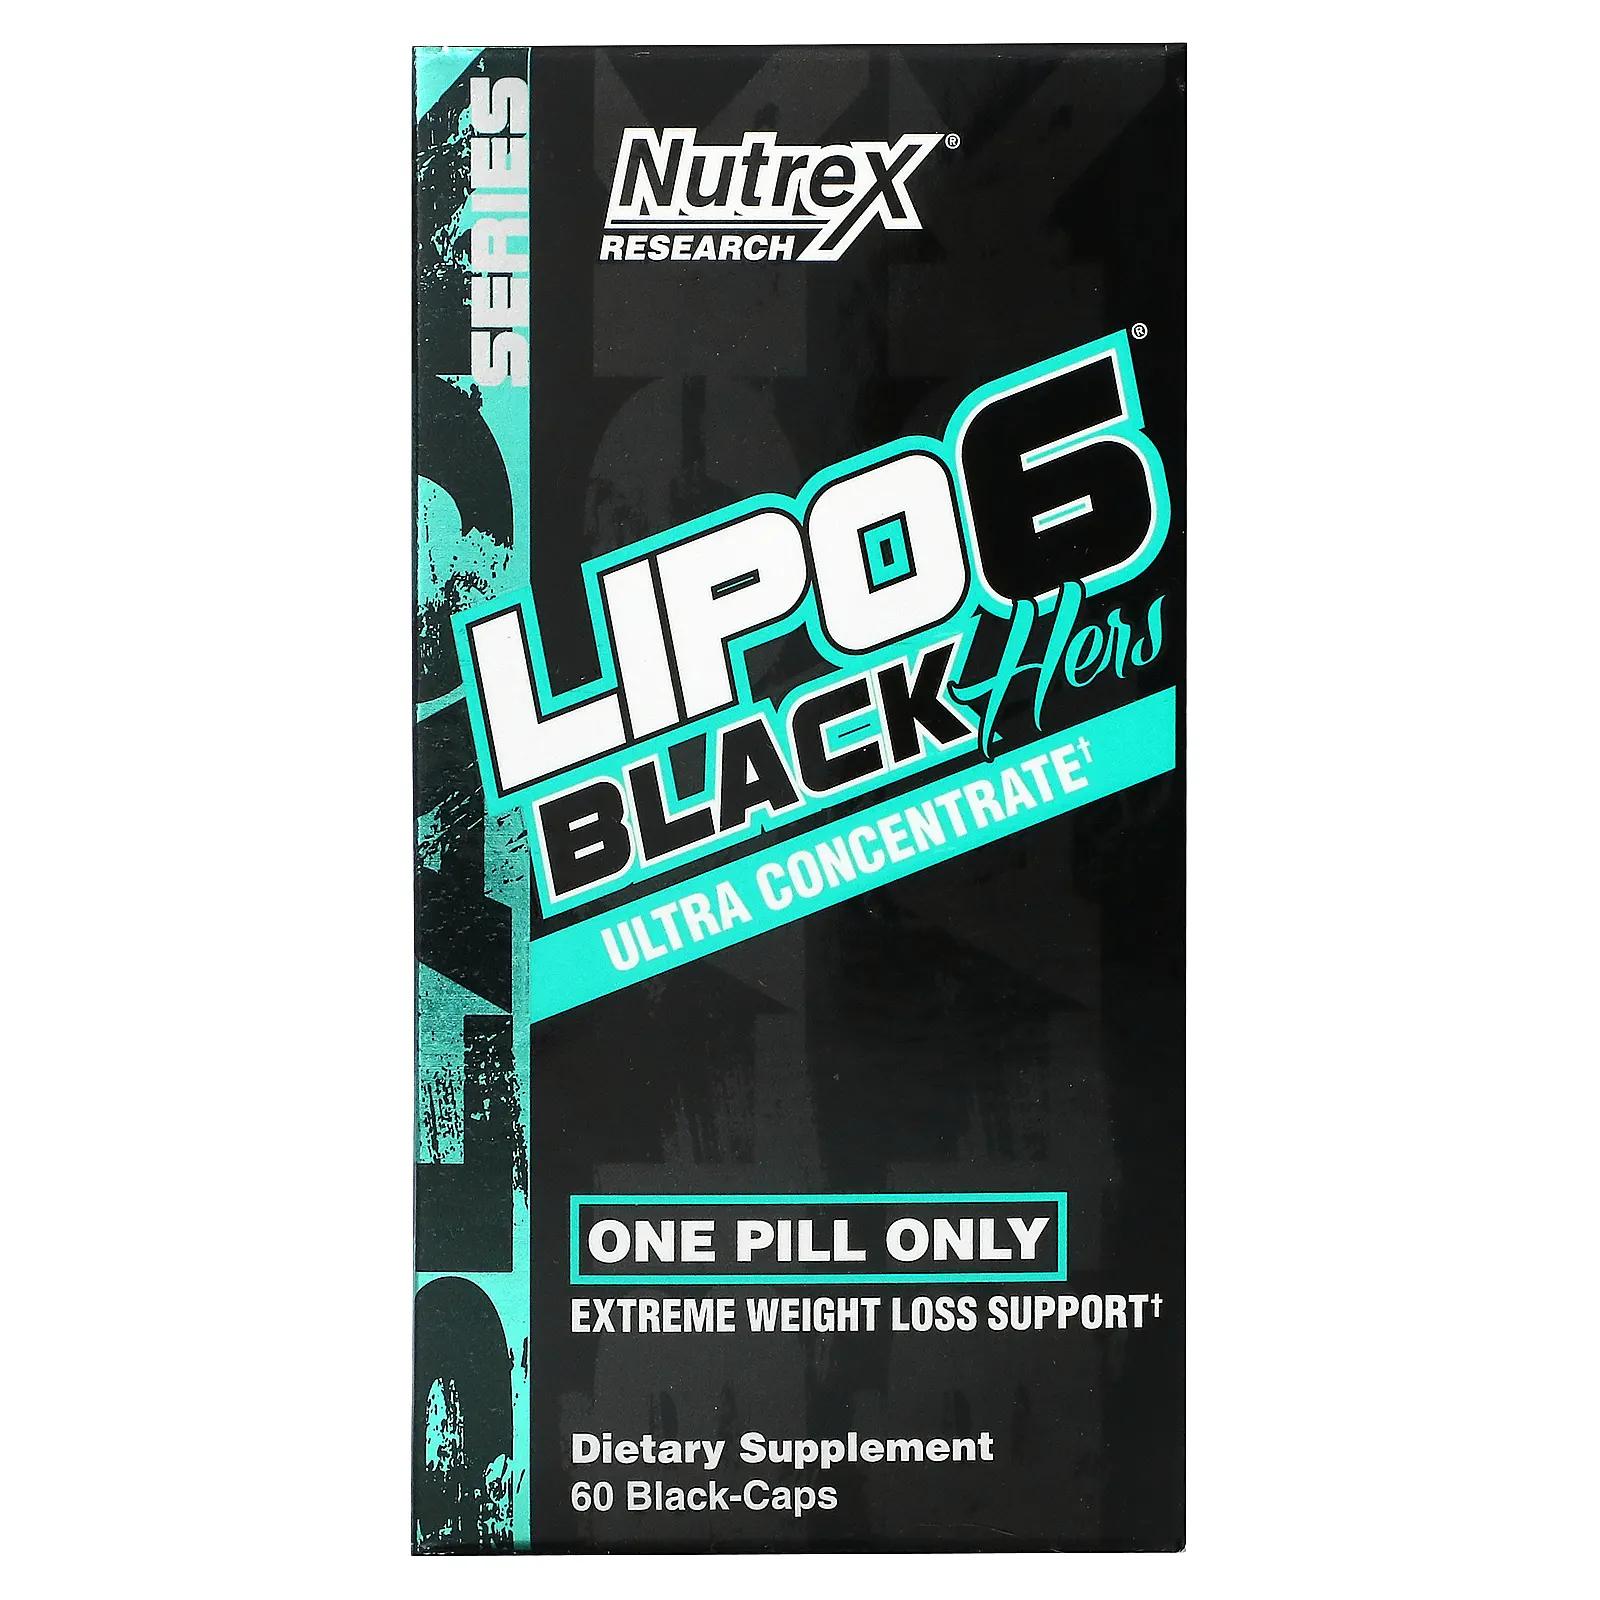 Nutrex Research Lipo-6 Black Hers ультраконцентрированный 60 черных капсул nutrex research muscle infusion улучшенная протеиновая смесь ваниль 2265 г 5 фунтов